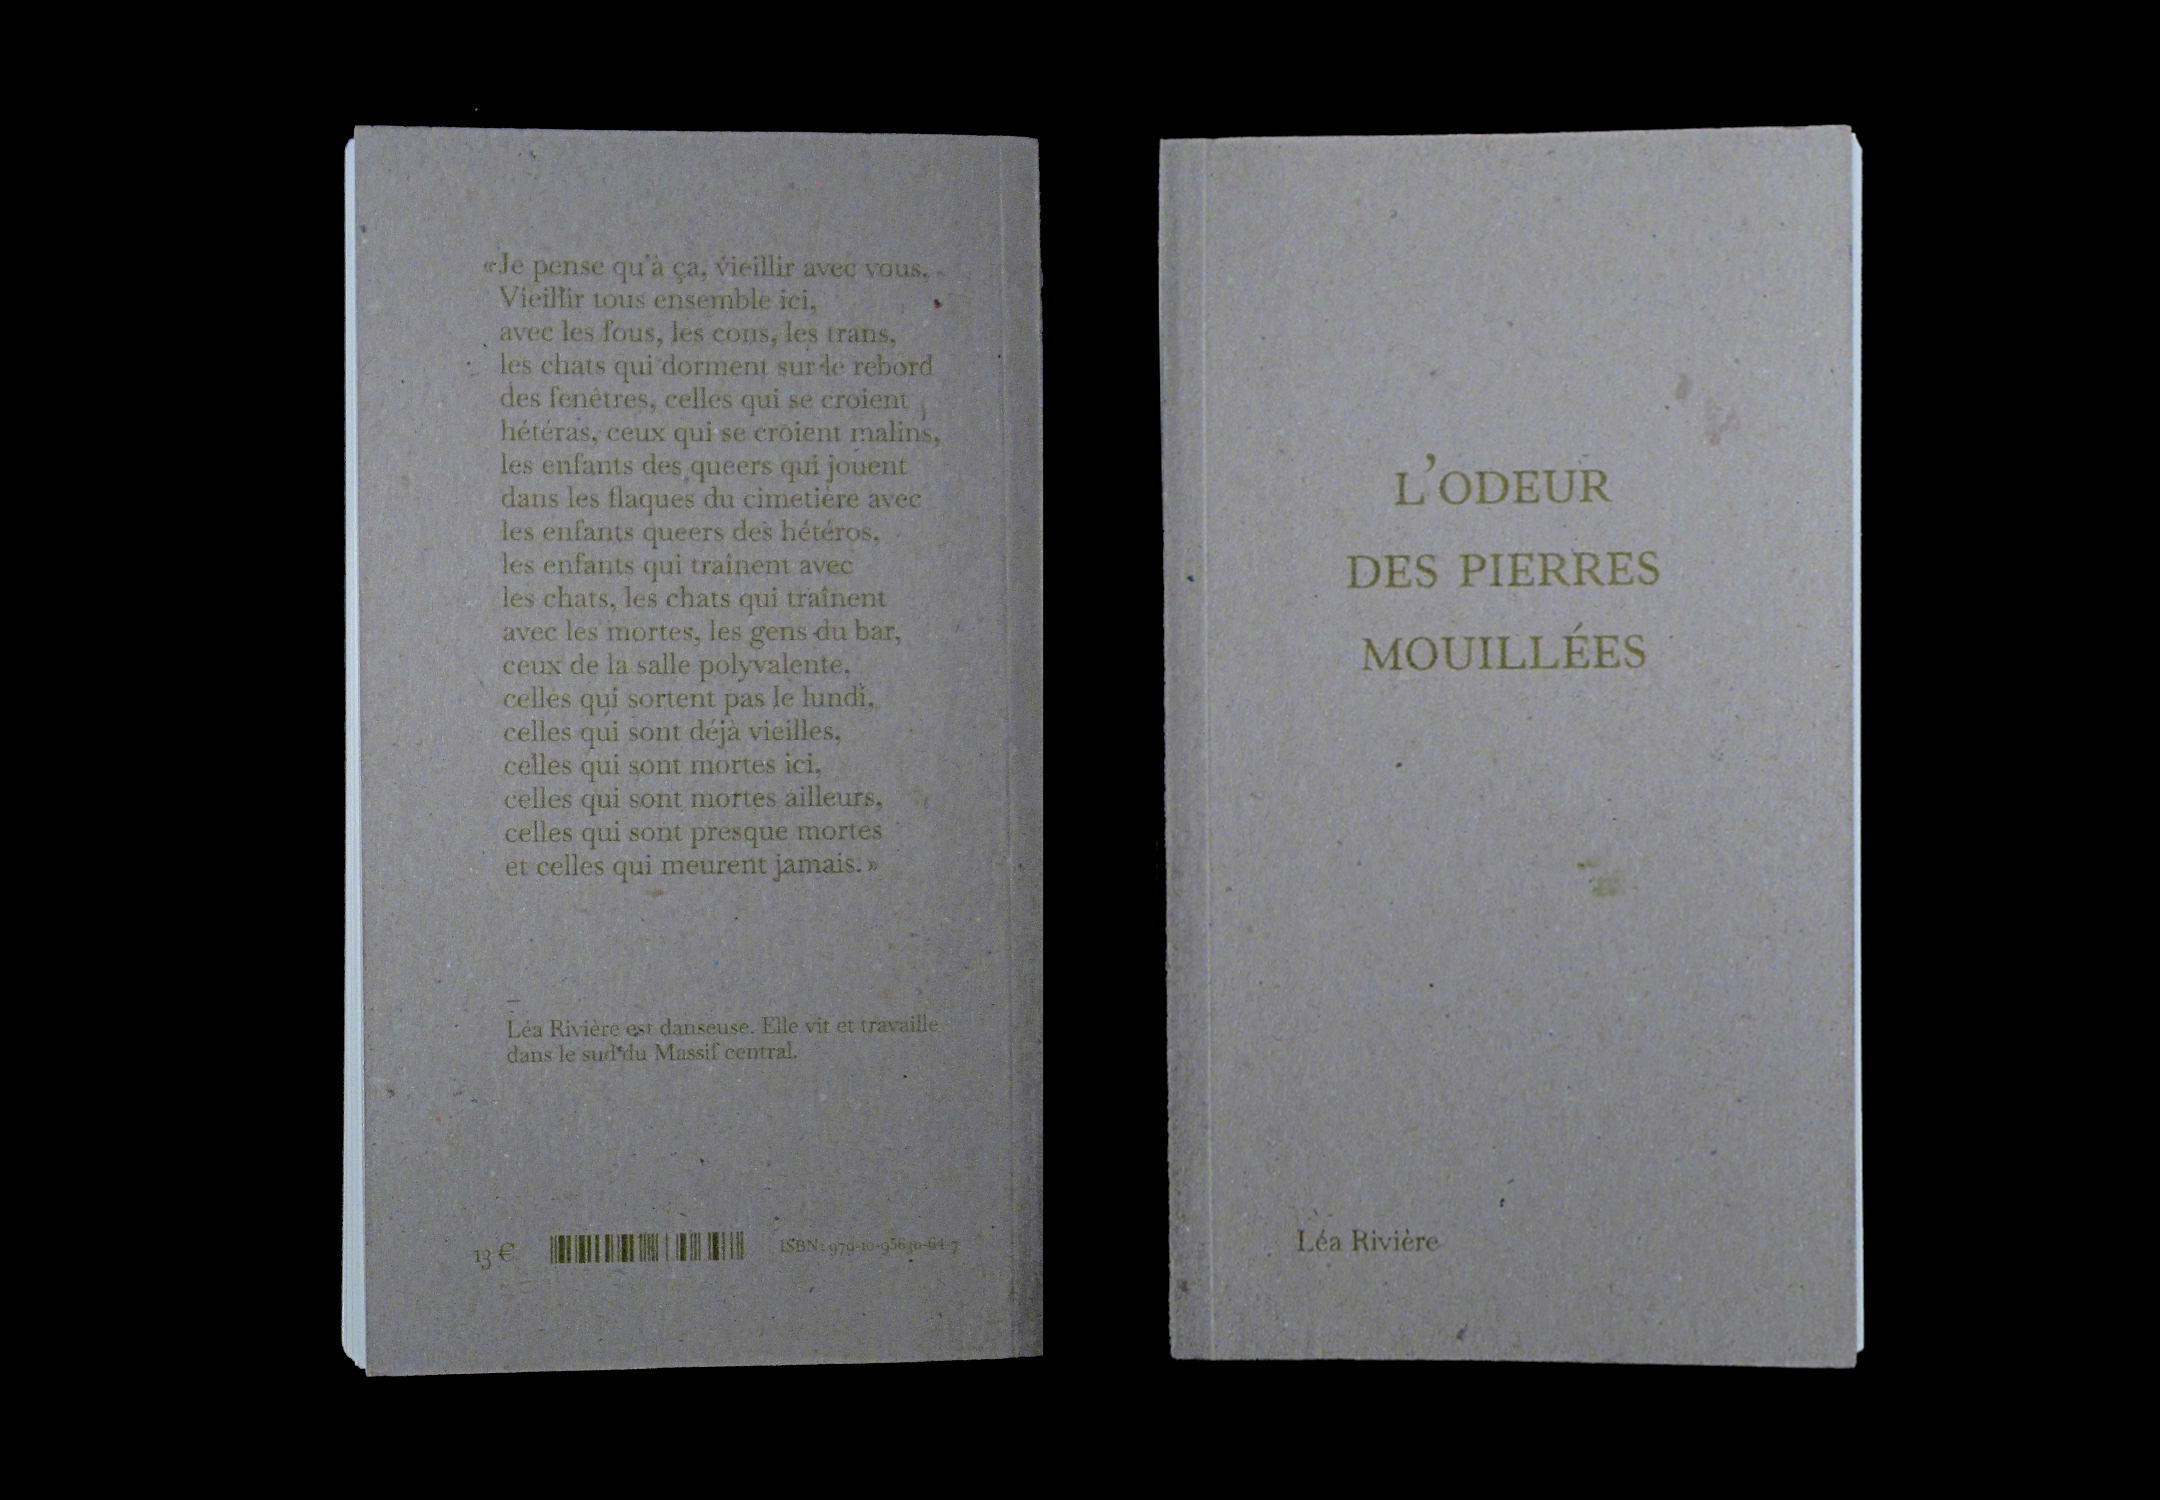 Couverture et quatrième de couverture du livre.